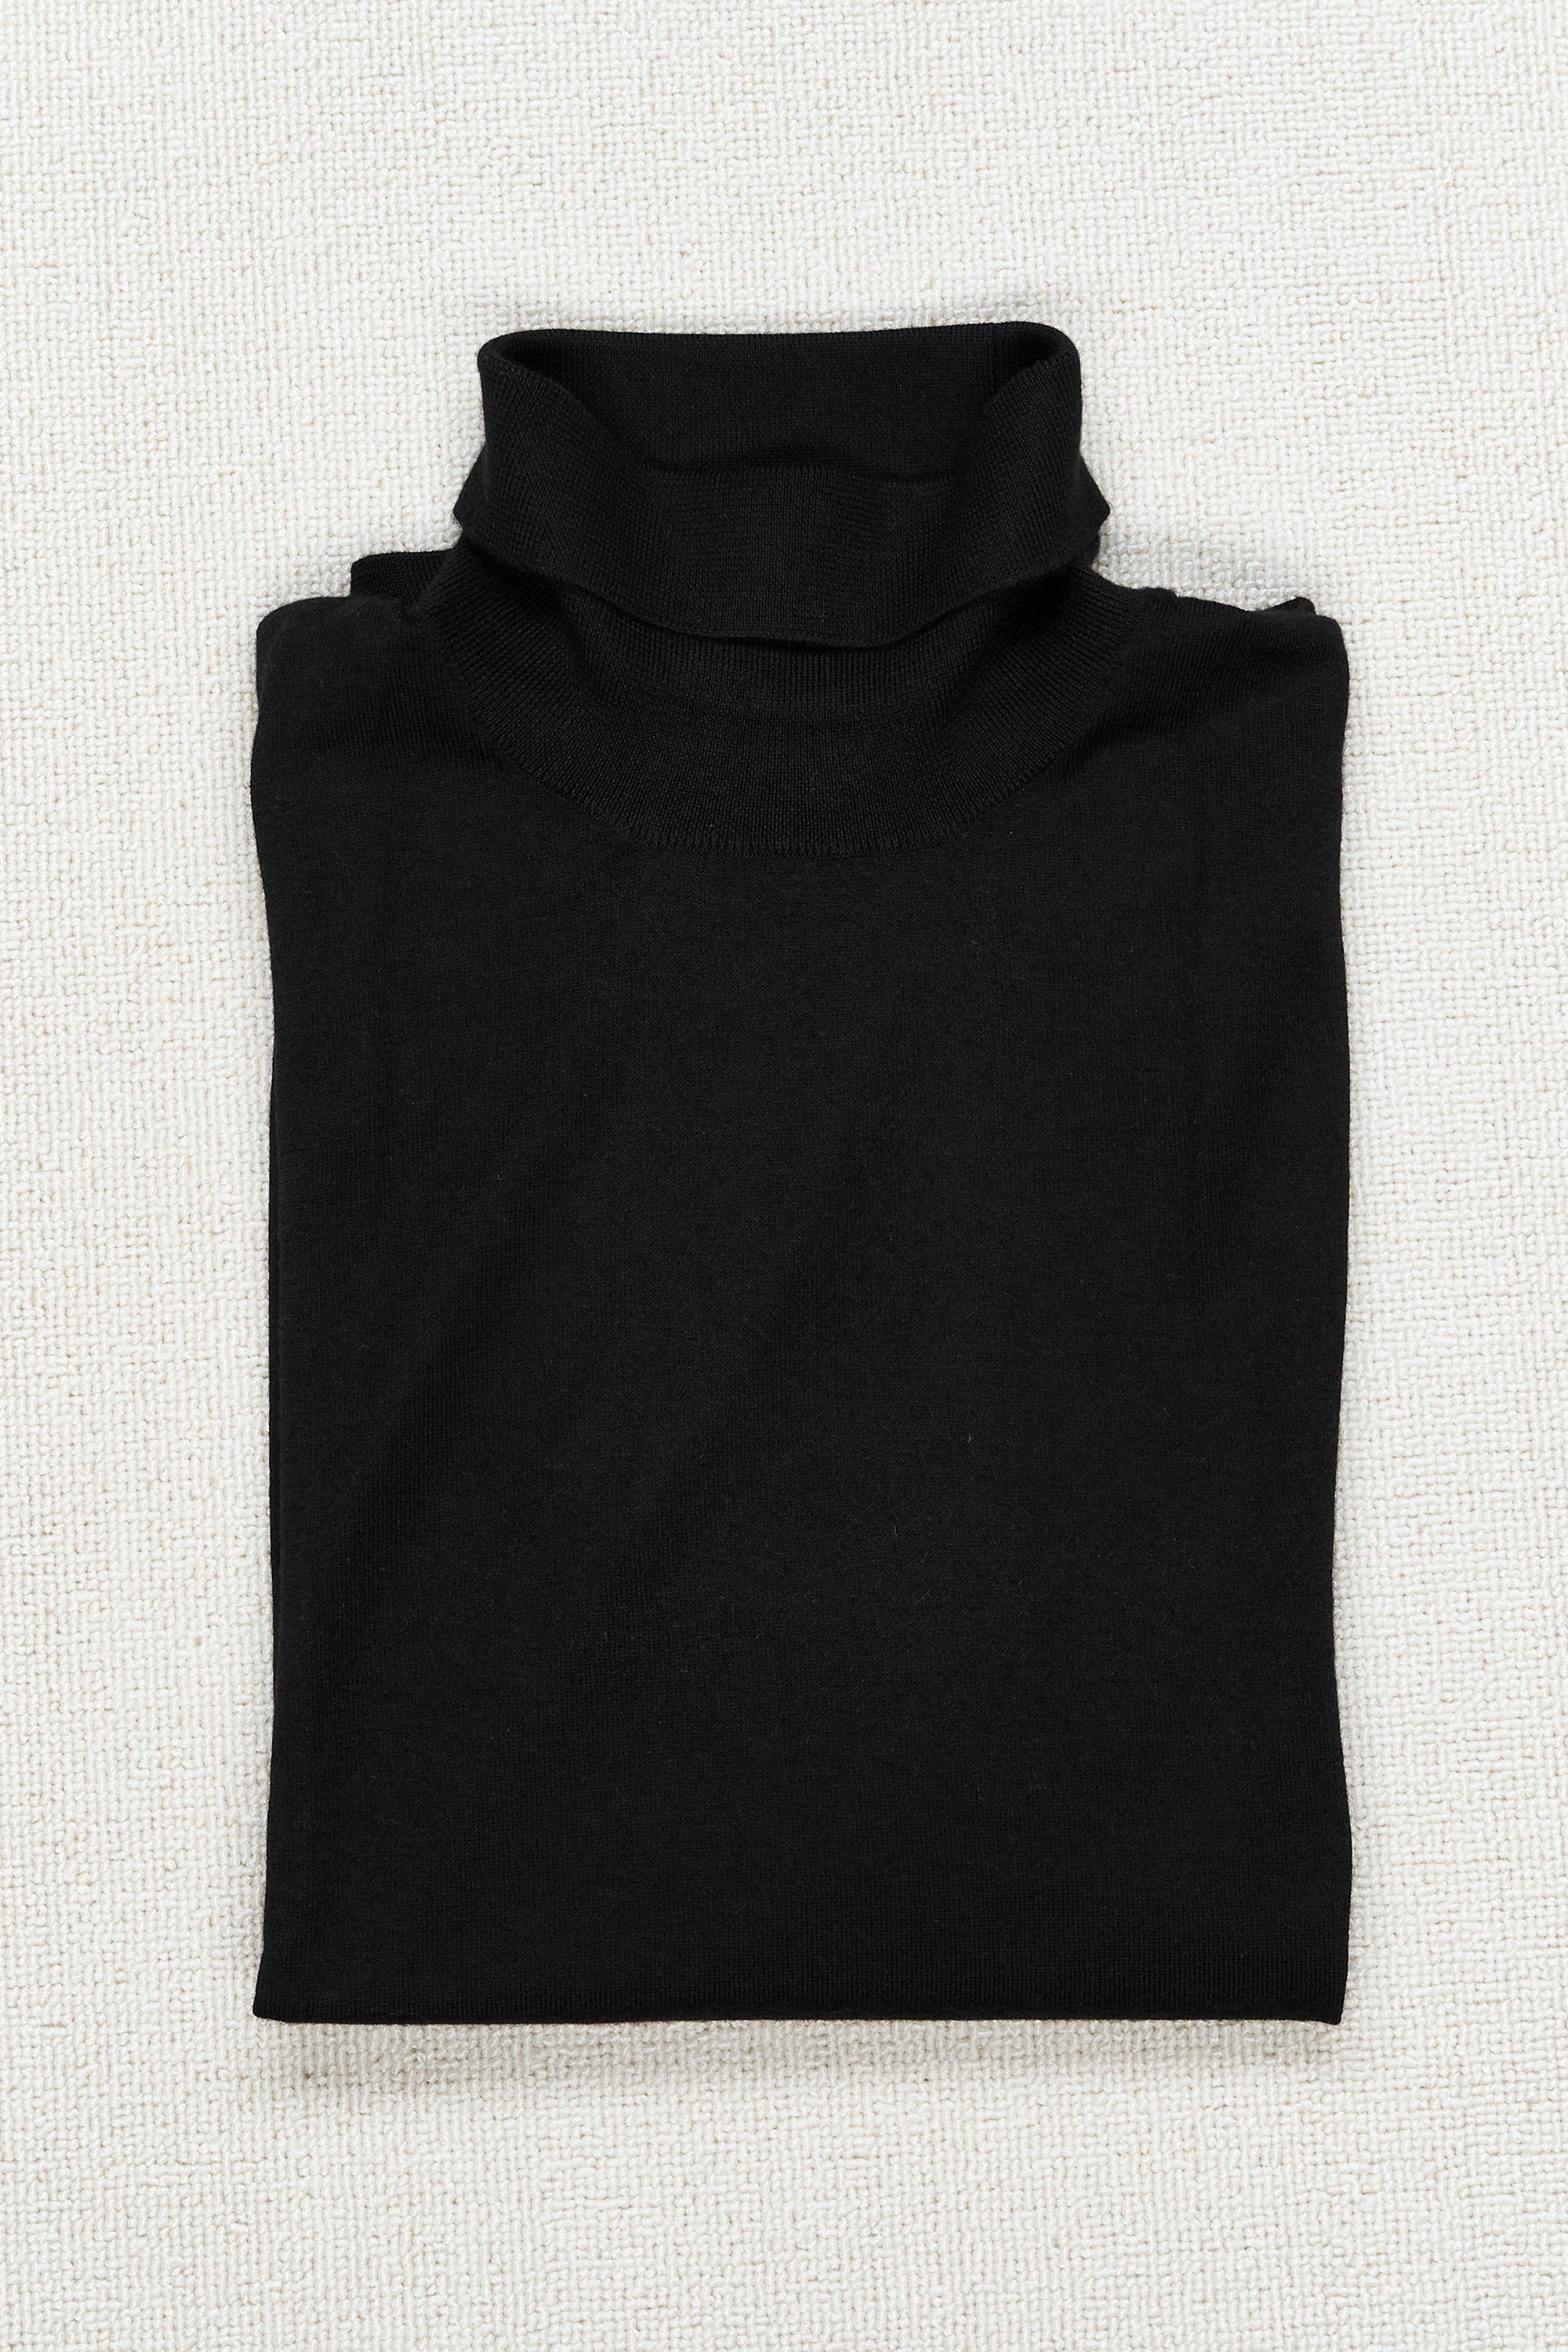 Caruso MA35 Black Cashmere/Silk Turtle Neck Sweater